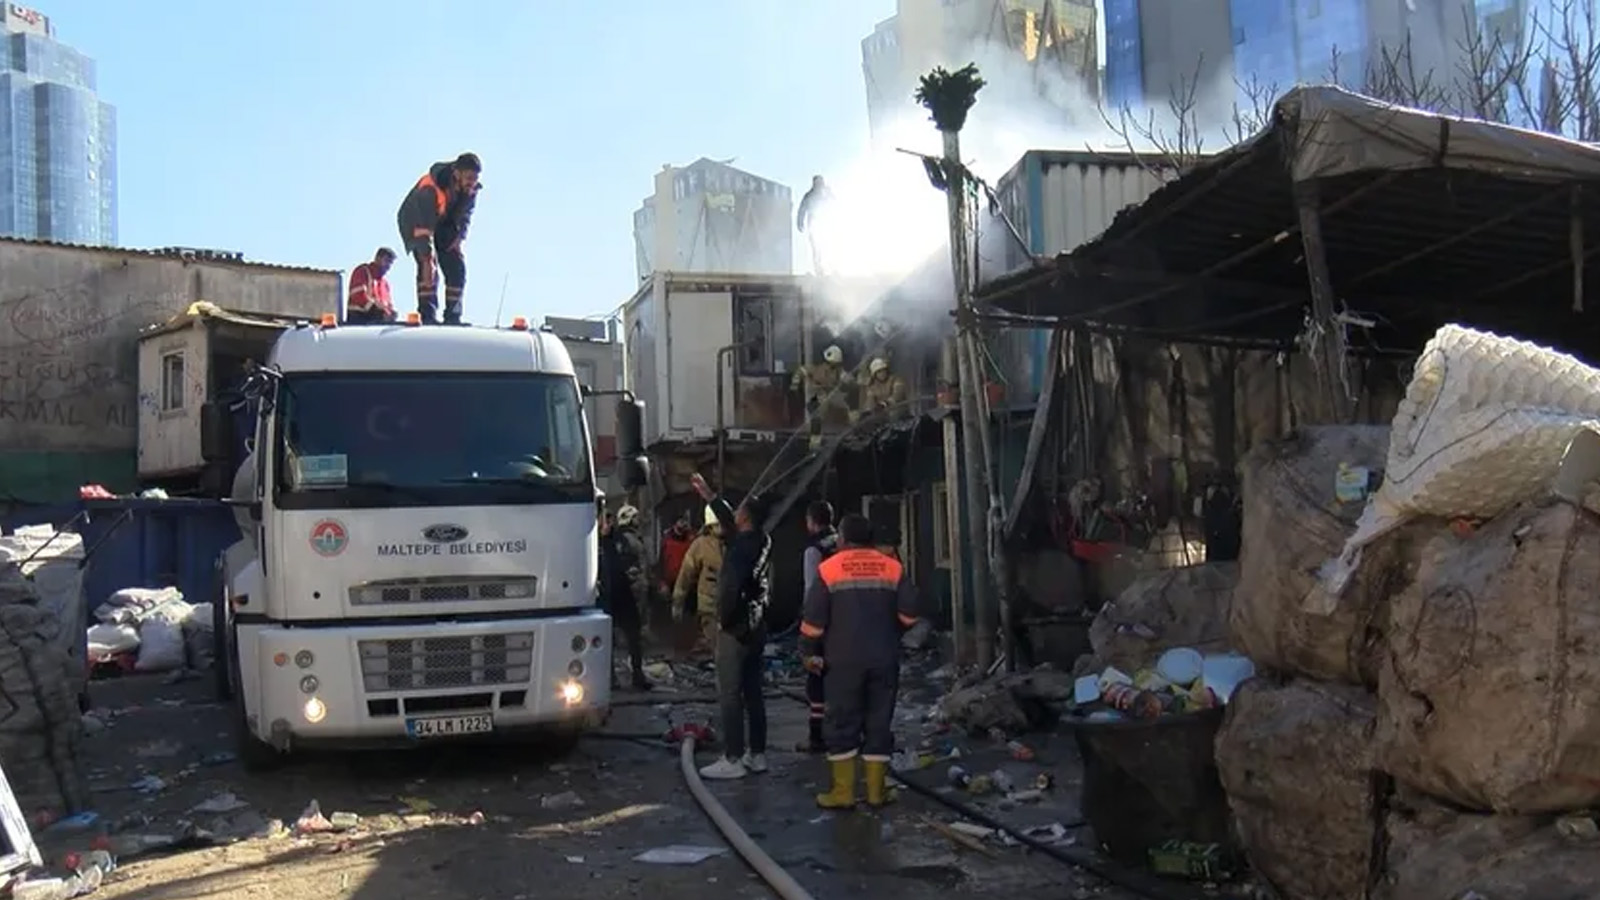 Maltepe'de işçilerin kaldığı konteynerde yangın